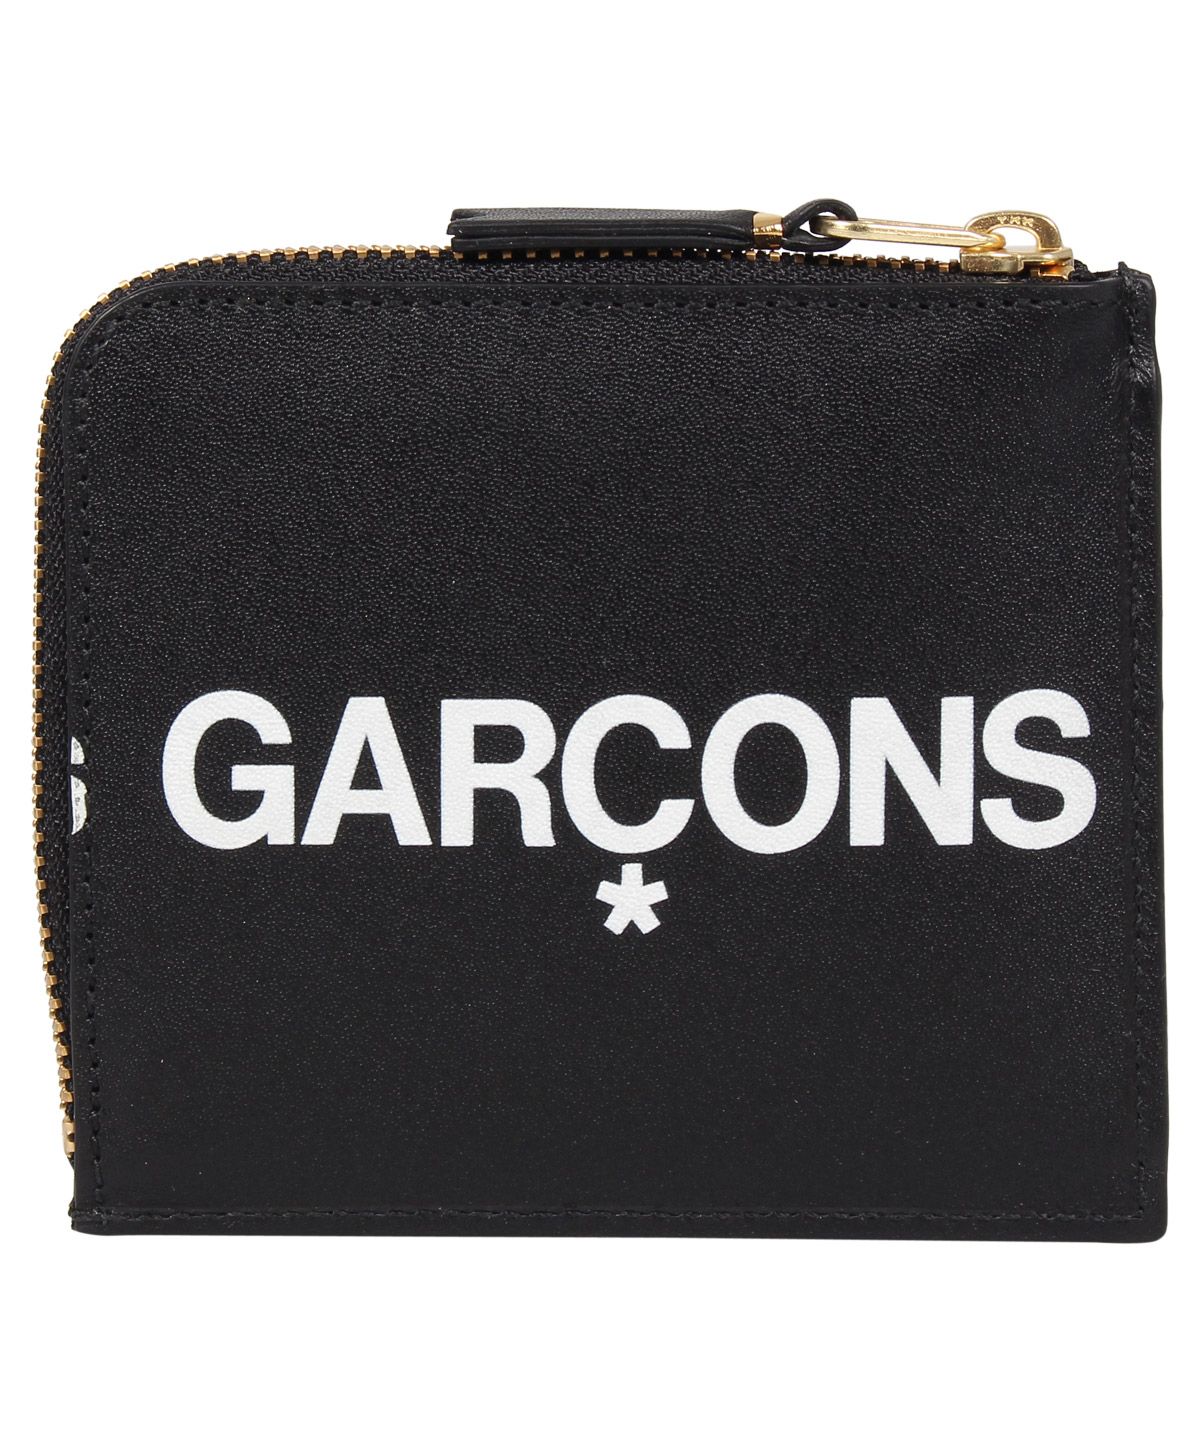 コムデギャルソン COMME des GARCONS 財布 ミニ財布 メンズ レディース L字ファスナー 本革 HUGE LOGO WALLET  ブラック 黒